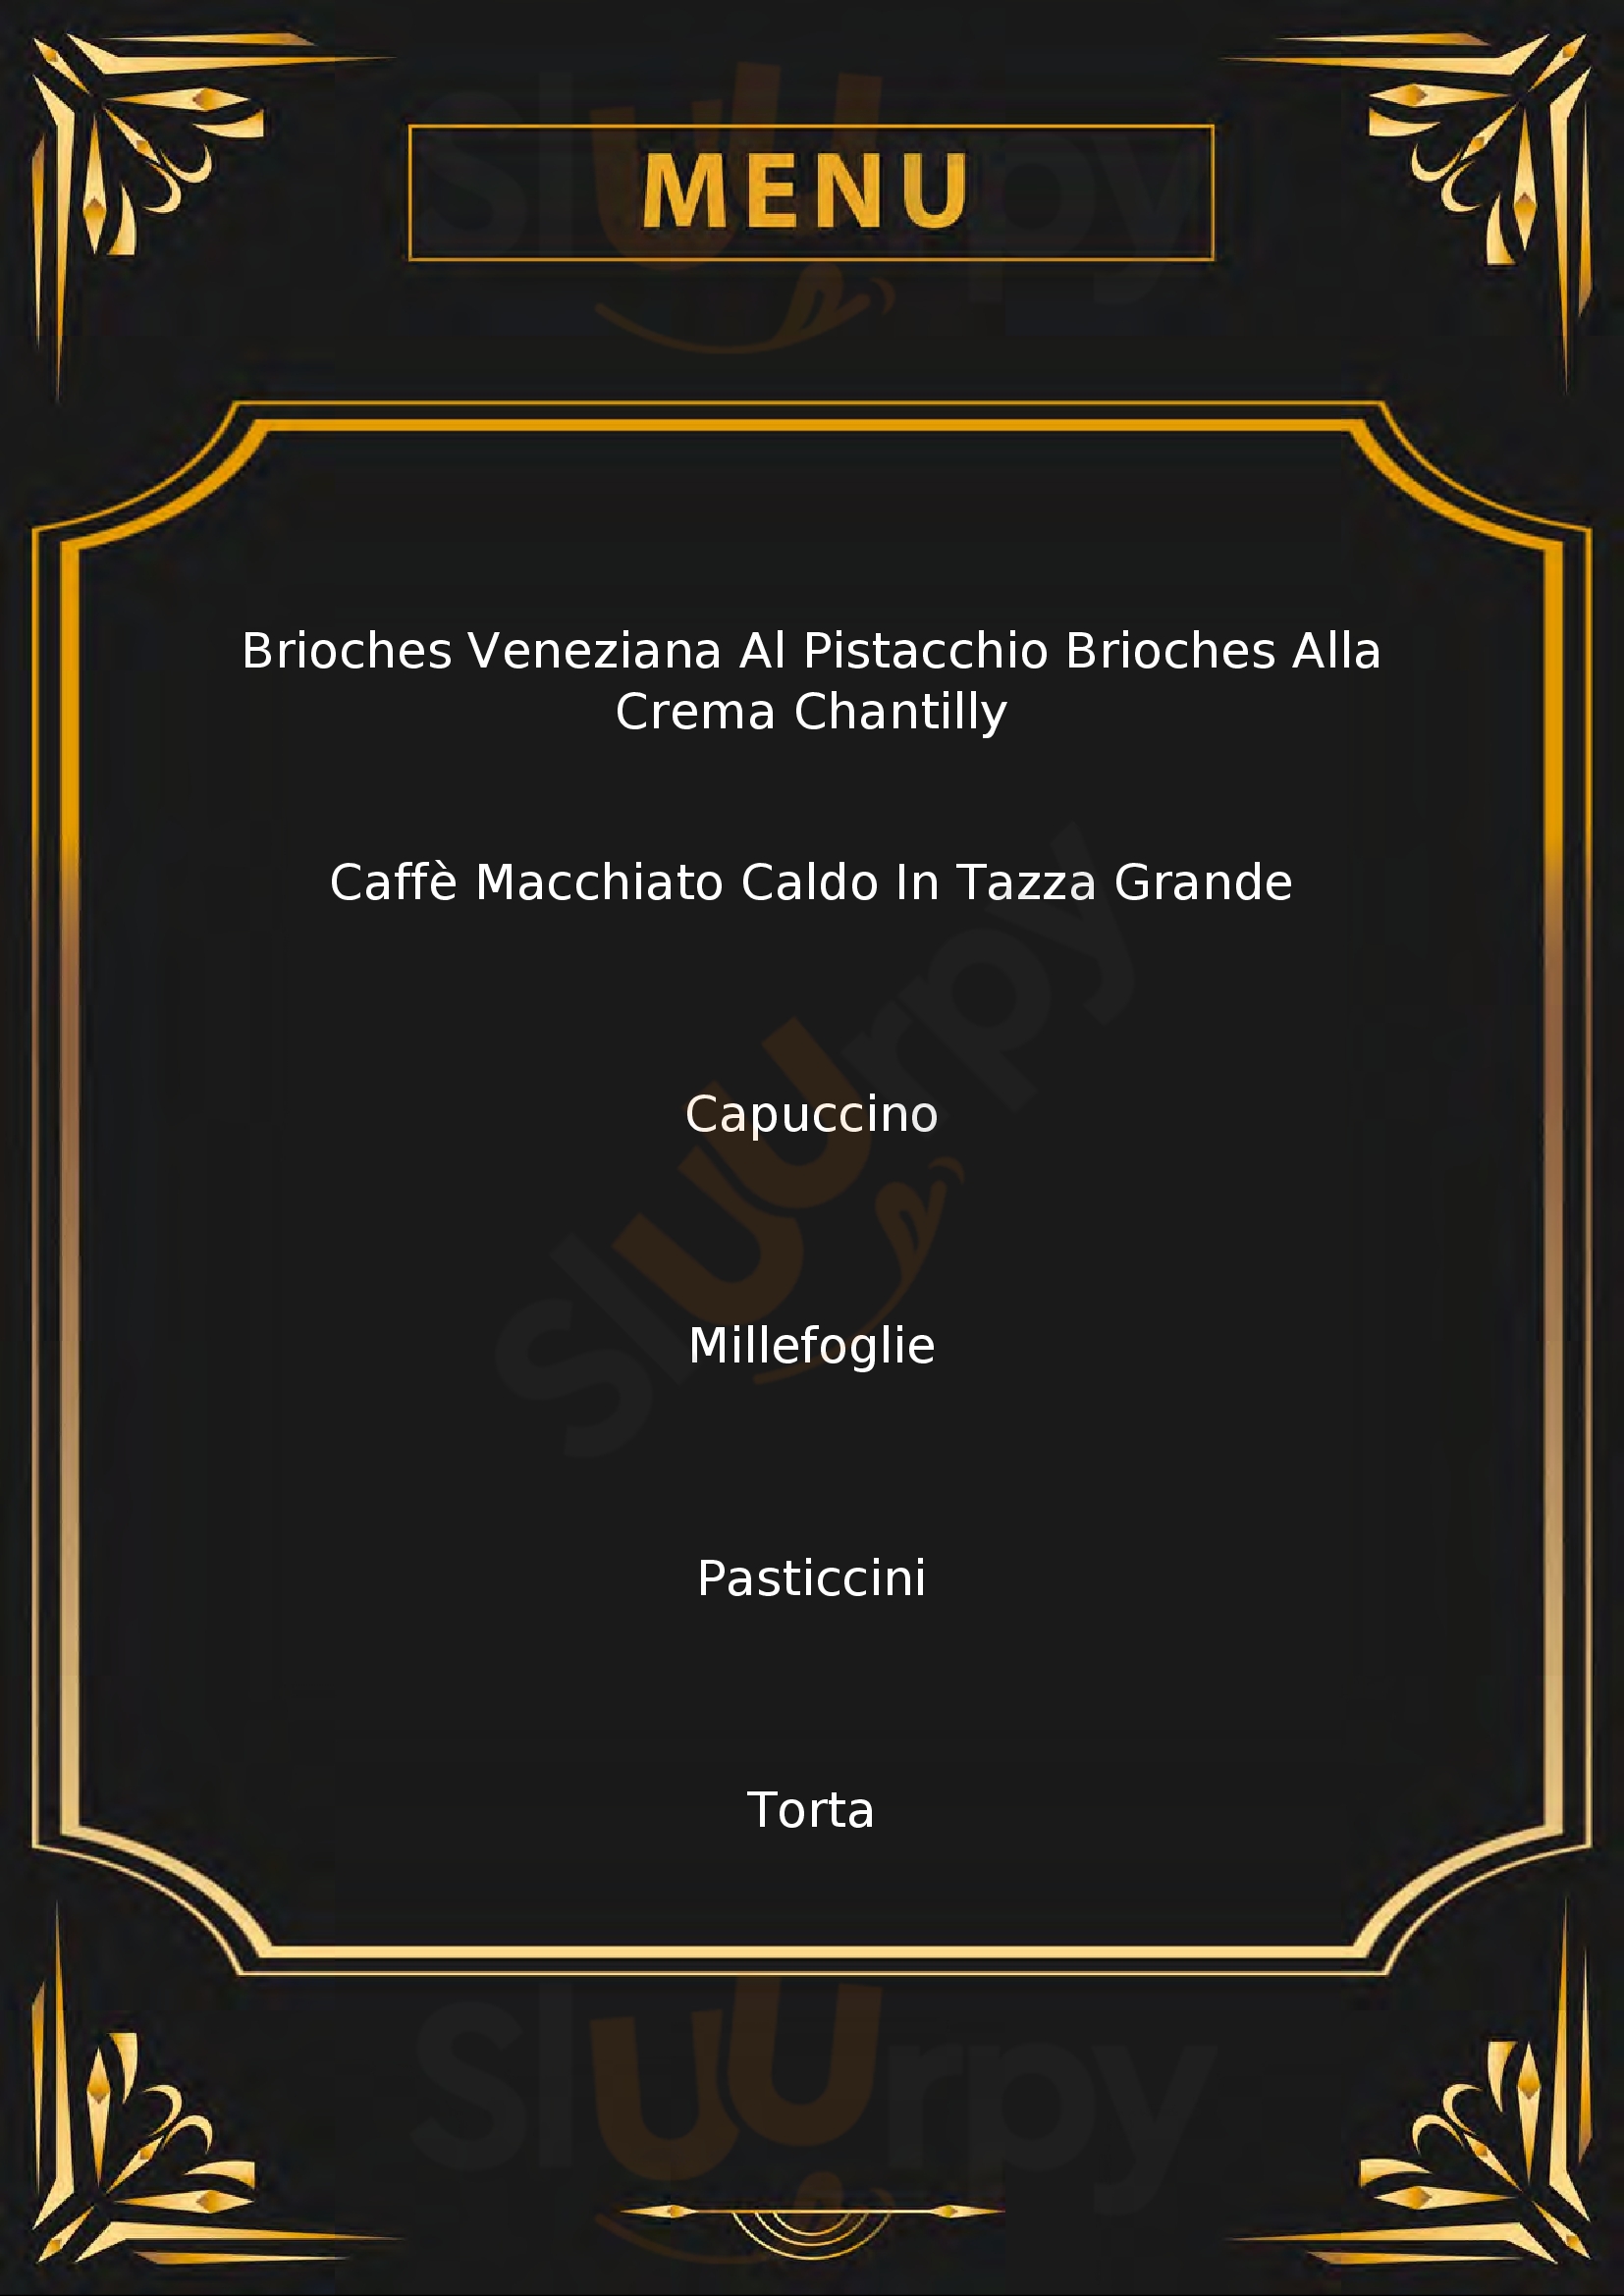 Pasticceria Cantolacqua Civitanova Marche menù 1 pagina